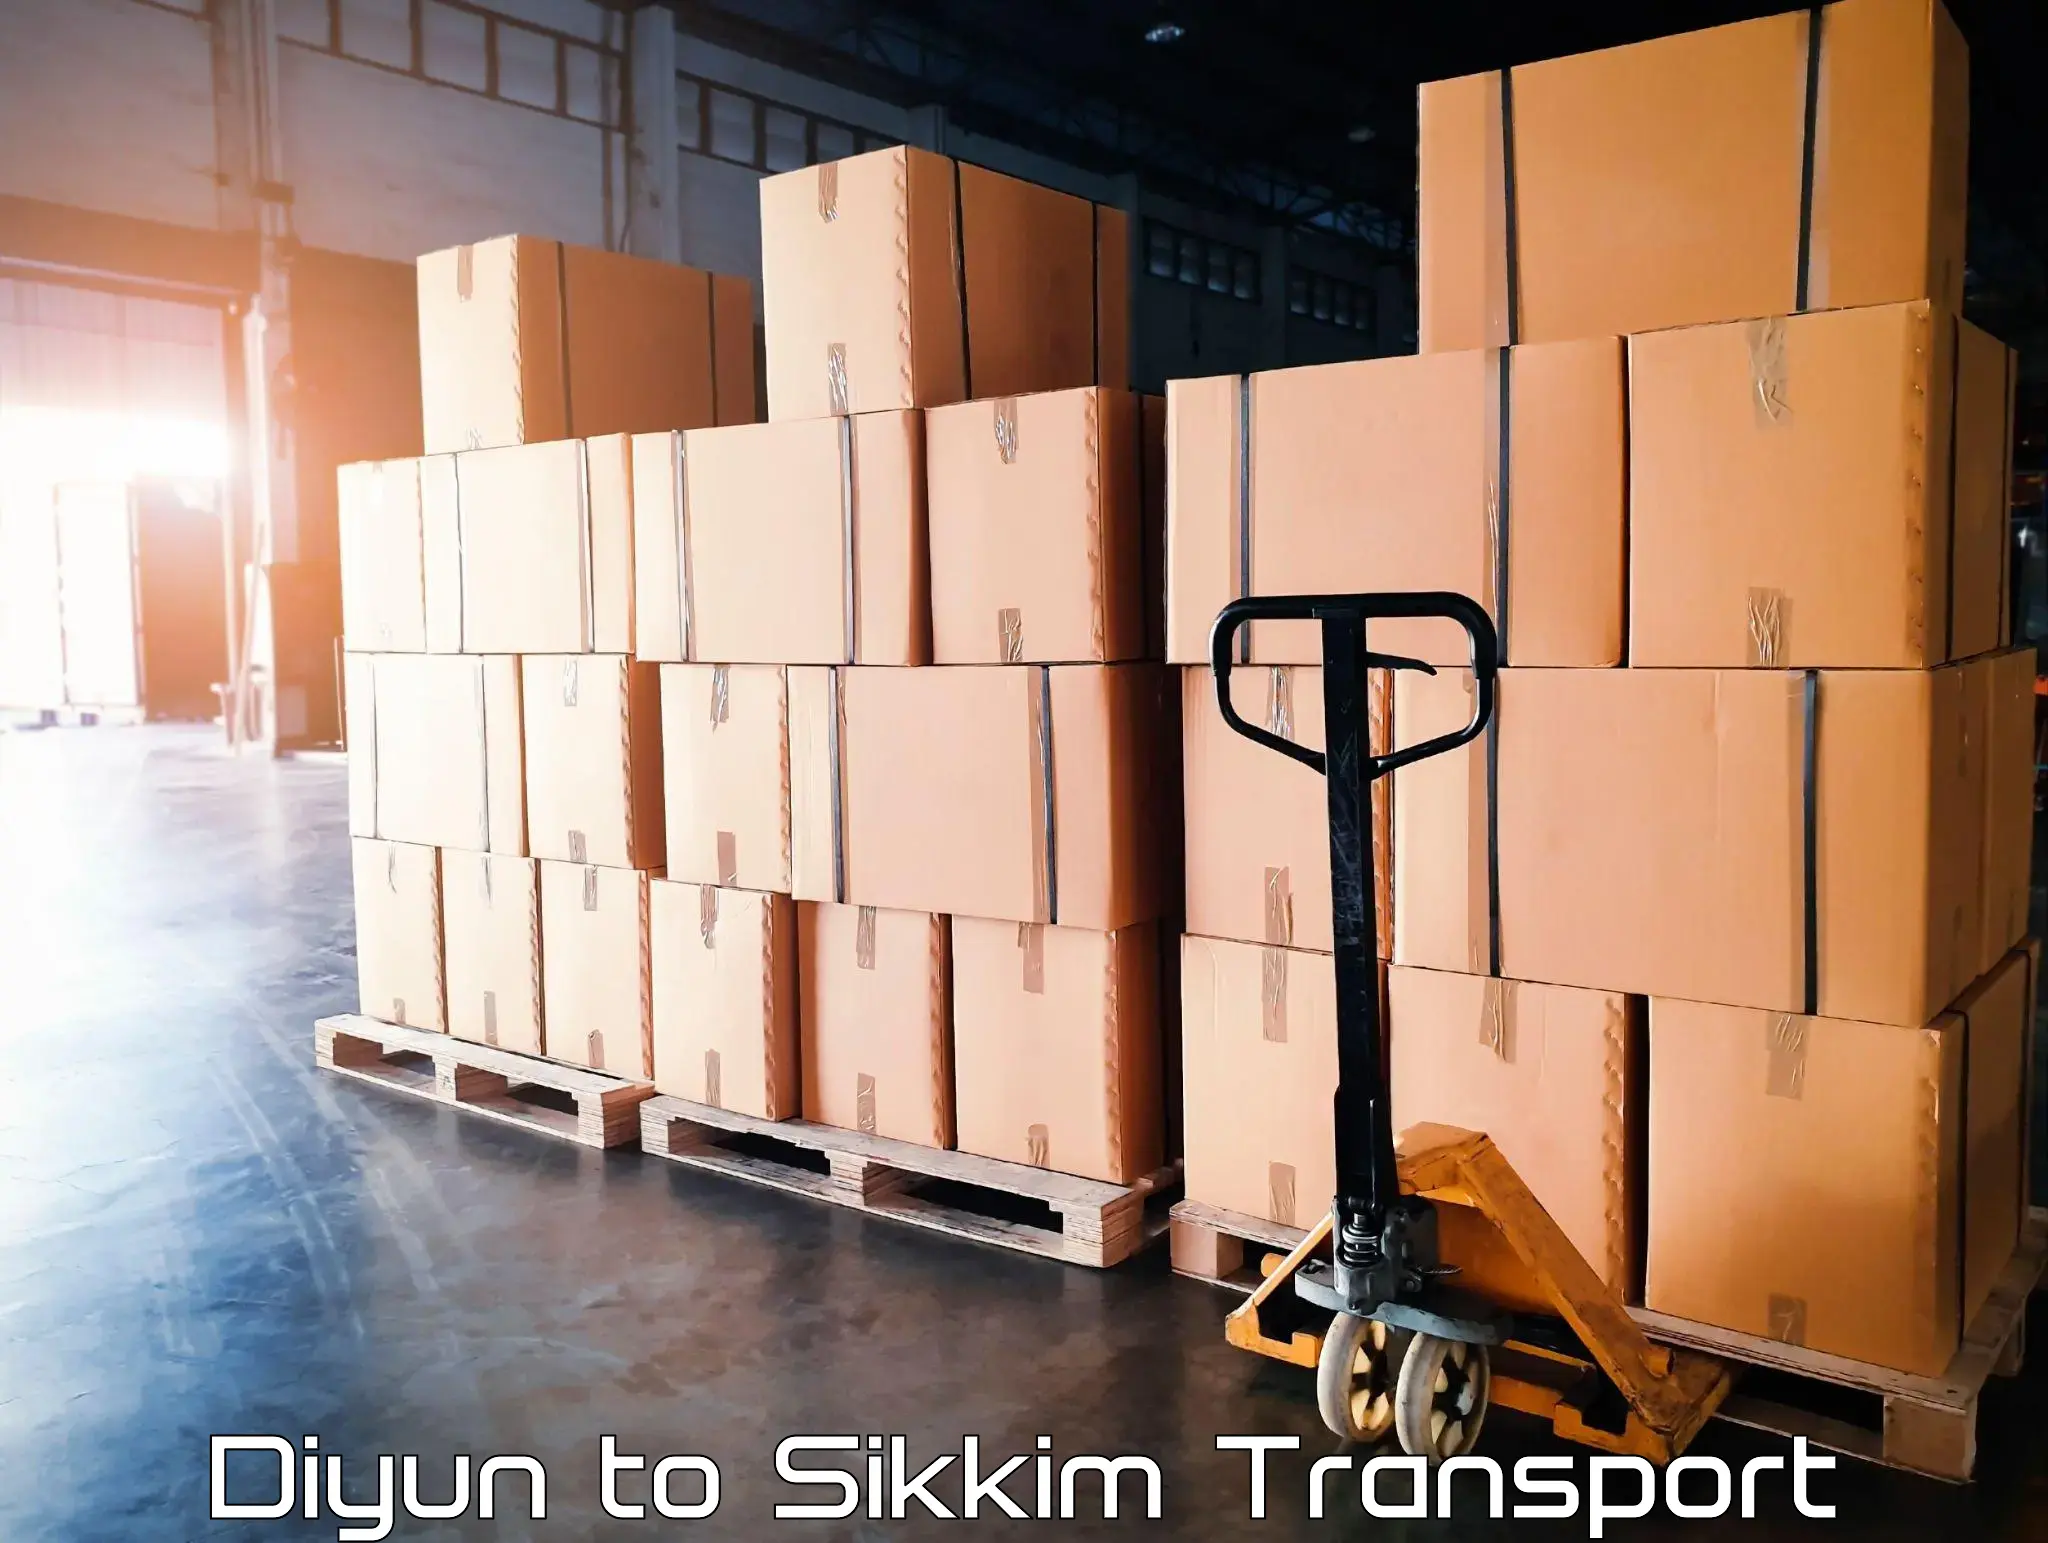 Daily transport service Diyun to Gangtok